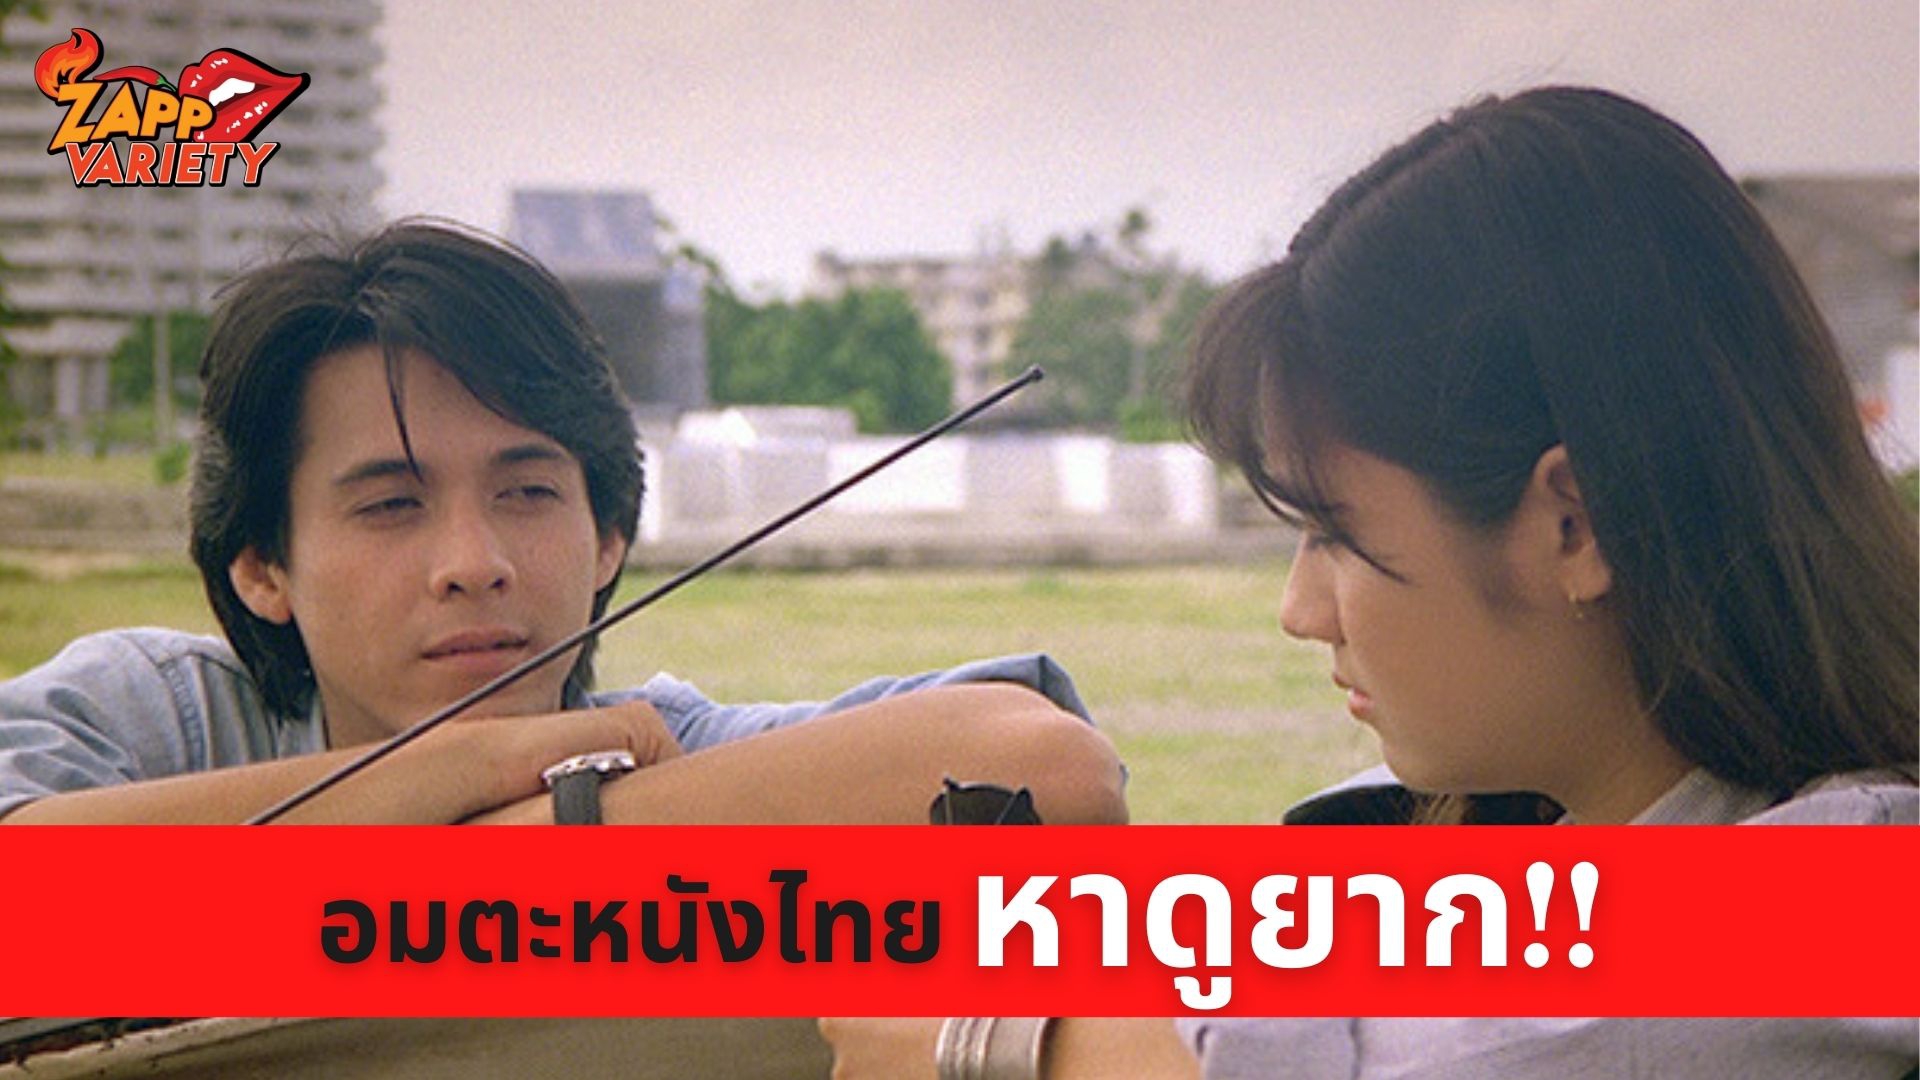 ทรูโฟร์ยู ช่อง 24 ชวนผู้ชมทางบ้านย้อนอดีตไปกับอมตะหนังไทยหาดูยาก